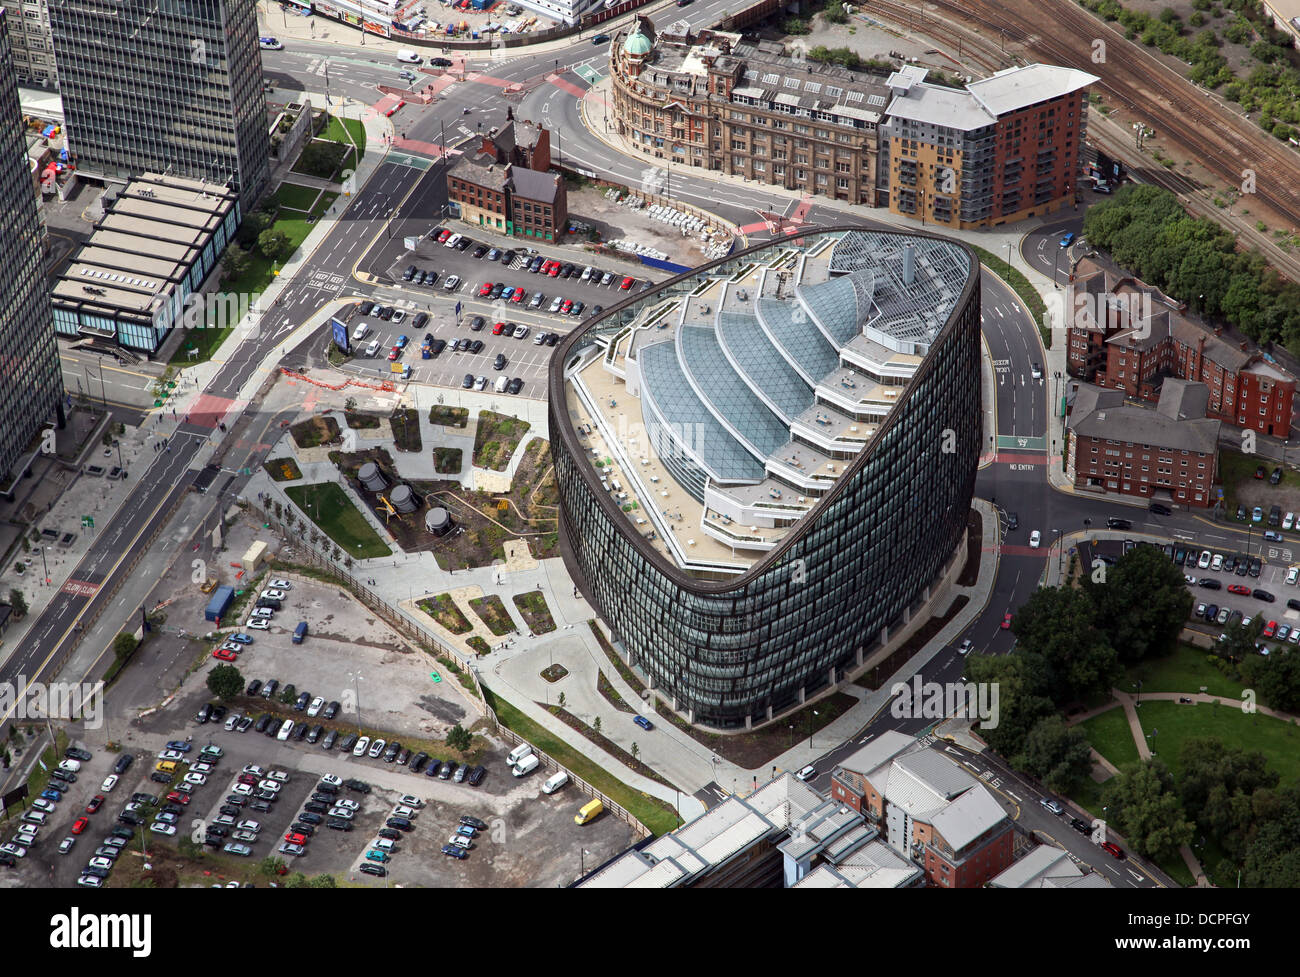 Vue aérienne d'un Angel Square dans le centre-ville de Manchester, accueil de groupe coopératif, Co-op AC Banque D'Images